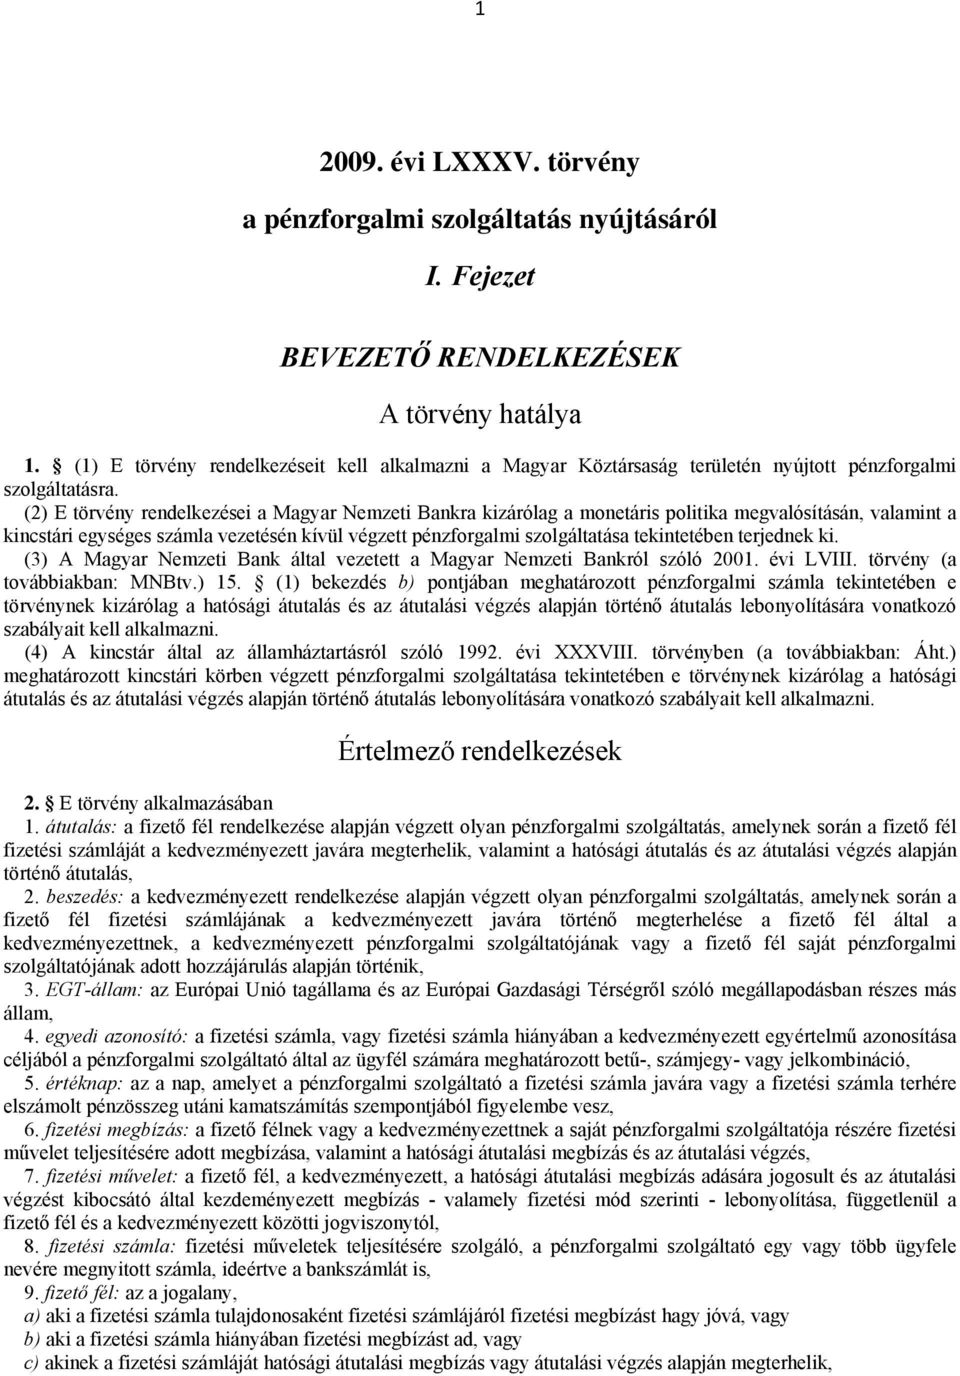 (2) E törvény rendelkezései a Magyar Nemzeti Bankra kizárólag a monetáris politika megvalósításán, valamint a kincstári egységes számla vezetésén kívül végzett pénzforgalmi szolgáltatása tekintetében